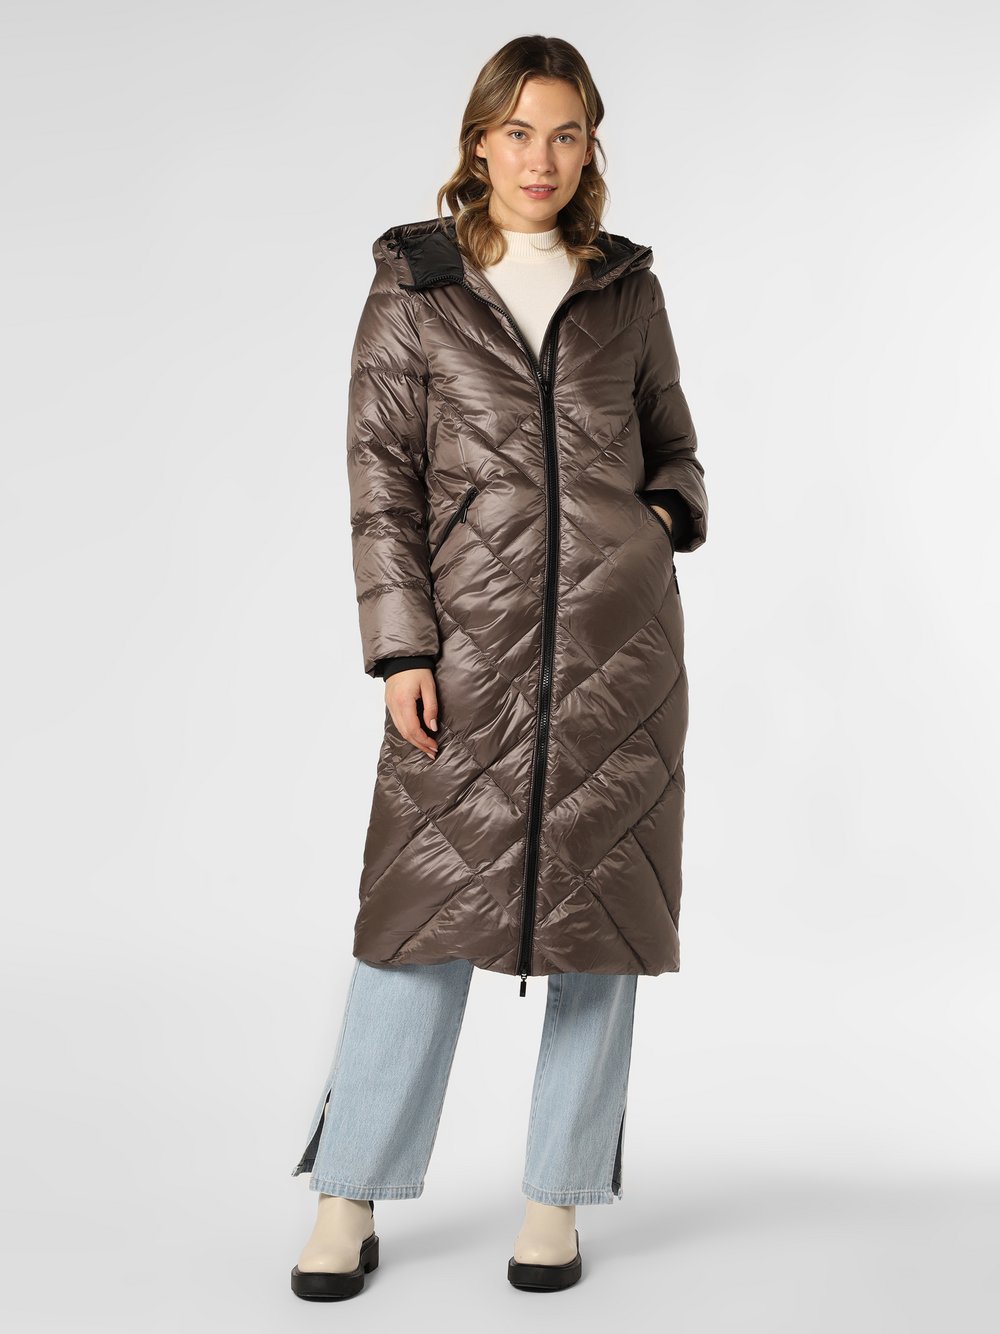 Esprit Collection - Płaszcz puchowy damski, beżowy